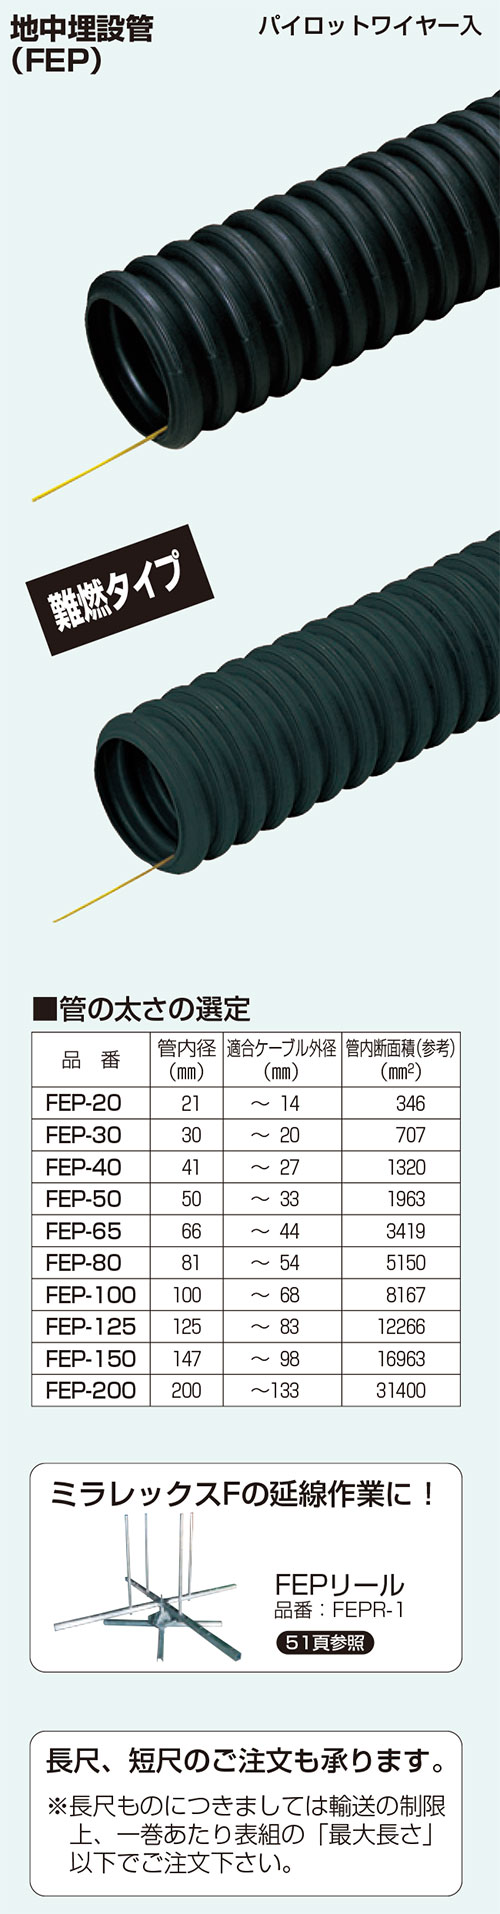 未来工業株式会社・FEP-150 ミラレックスF FEP管 150φ 【電線 